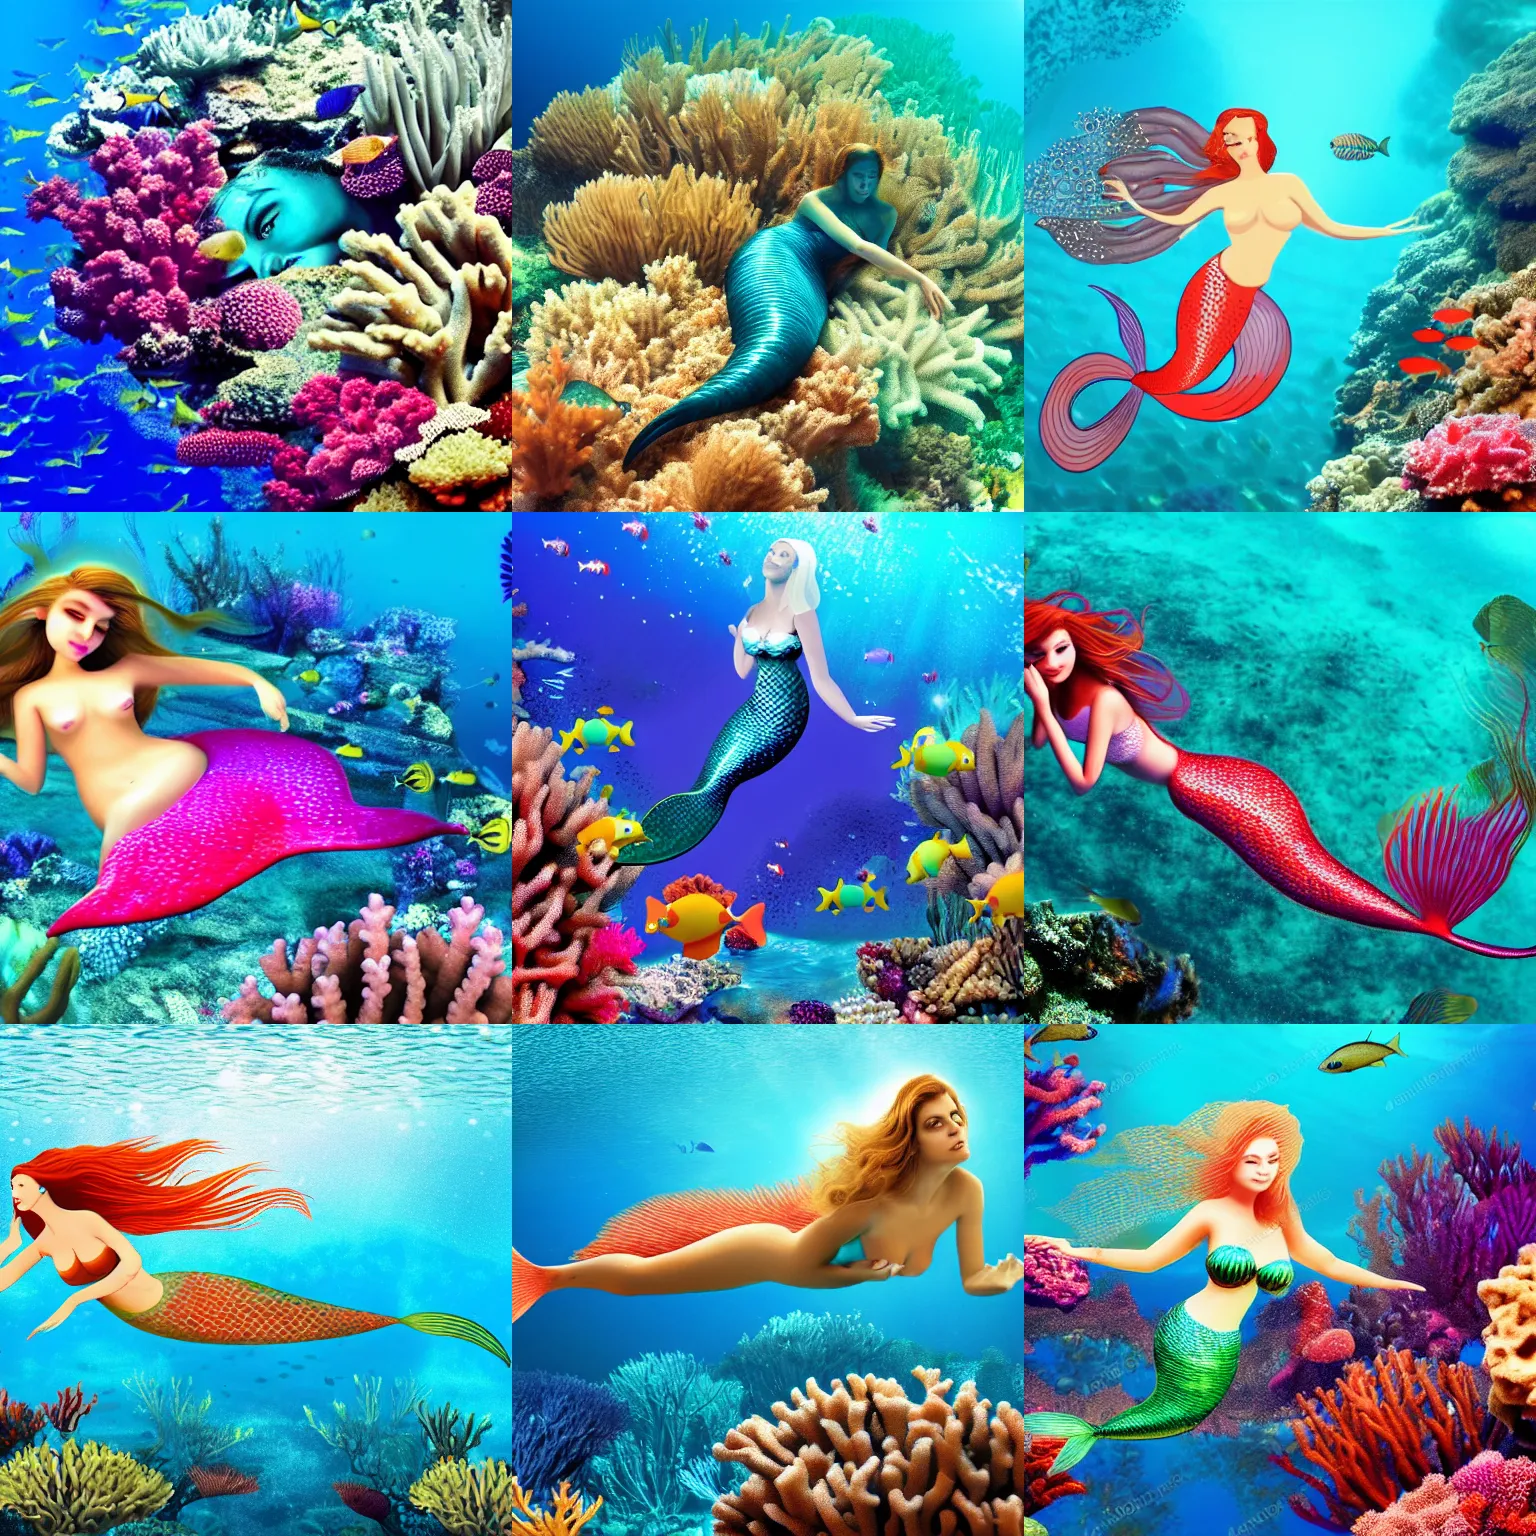 Prompt: beautiful mermaid swimming underwater coral reef, 4k,